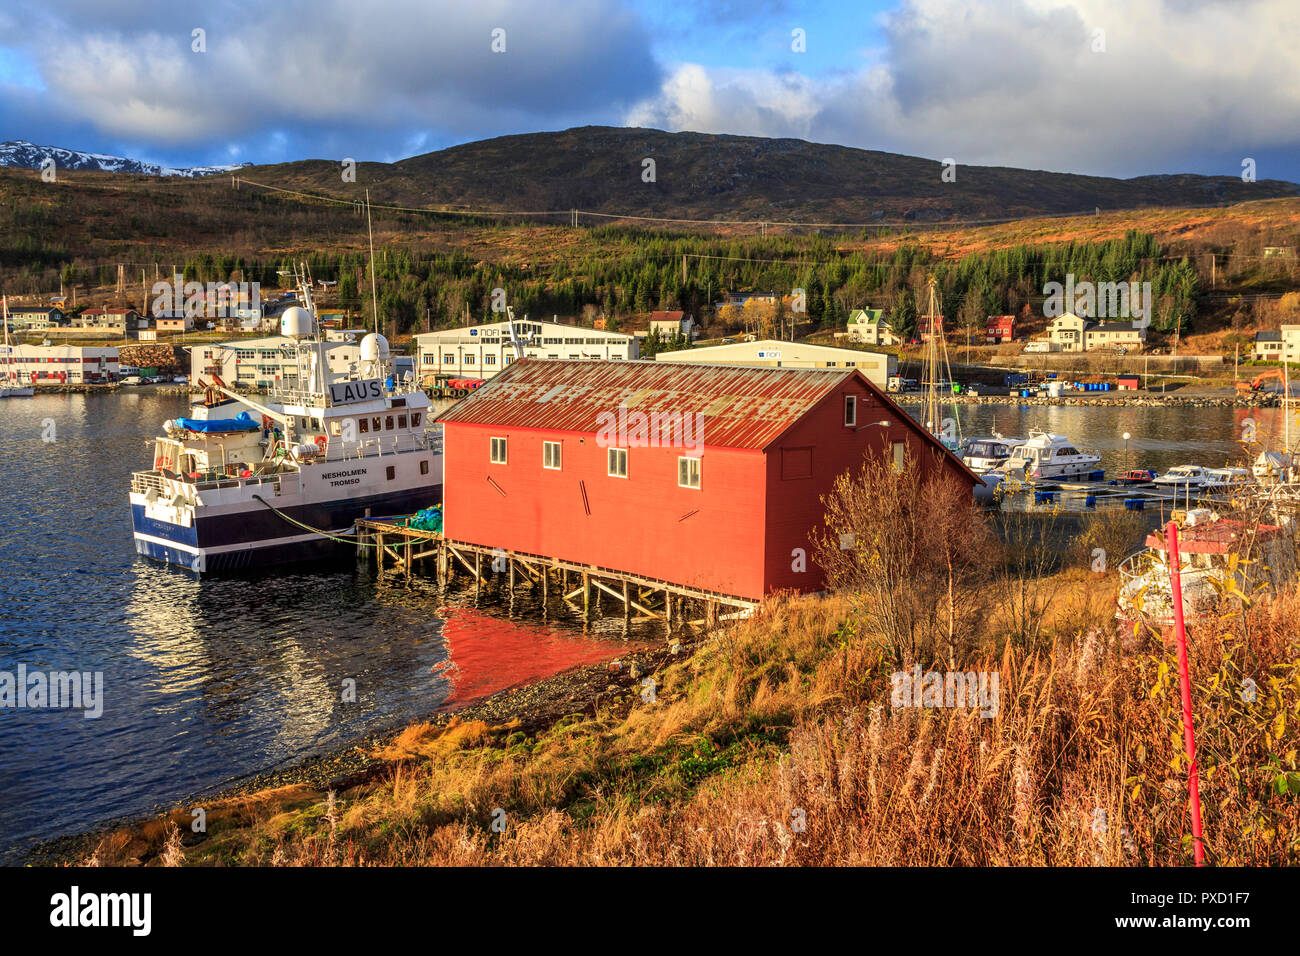 Le navi cantiere e il paesaggio scenic immagini stock Circolo Polare Artico isola Kvaloya Troms nr Tromso Norvegia settentrionale Foto Stock